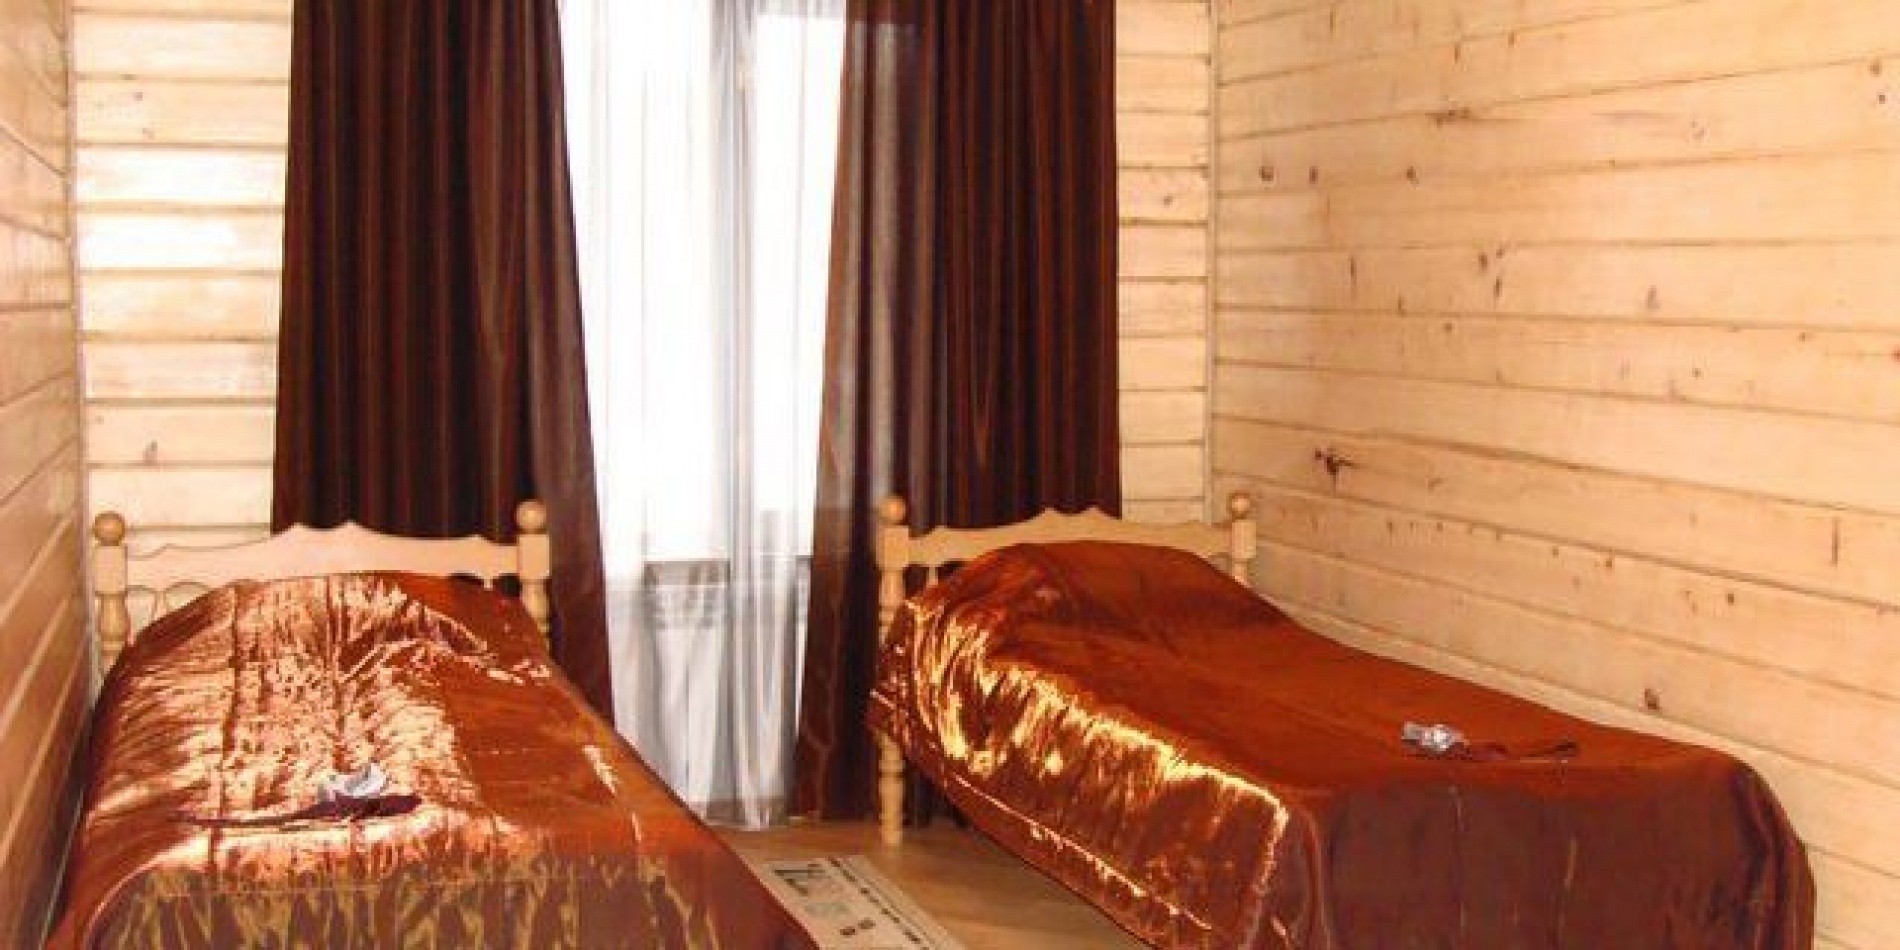 Гостиница «Барская усадьба» Республика Адыгея 2-местный номер «Стандарт» (отдельные кровати)